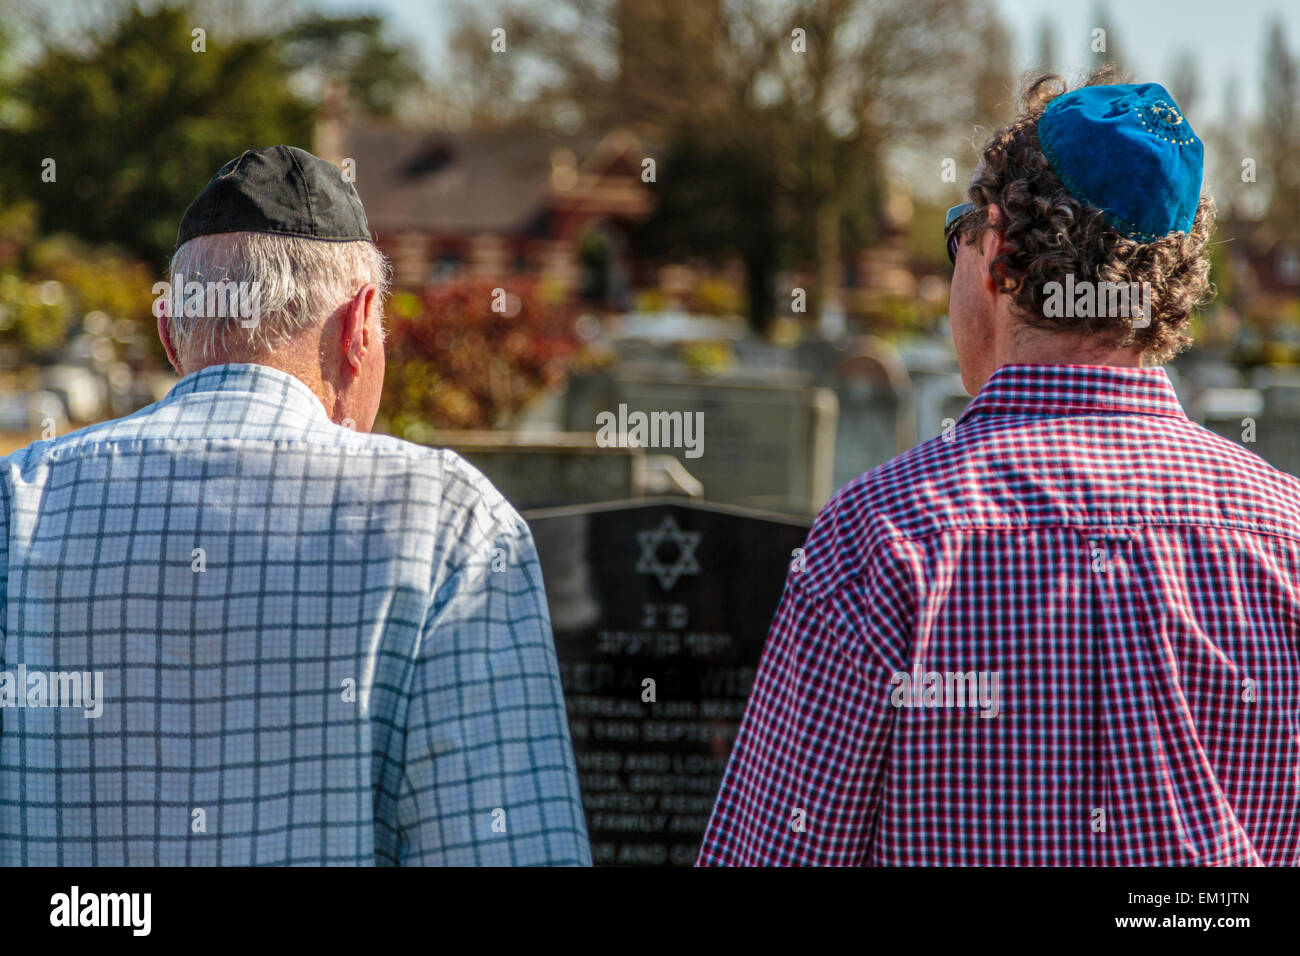 Les amateurs de coursiers juifs qui ont payé leur respect dans un cimetière latéral grave, un jour d'été chaud, Londres Angleterre Royaume-Uni Banque D'Images